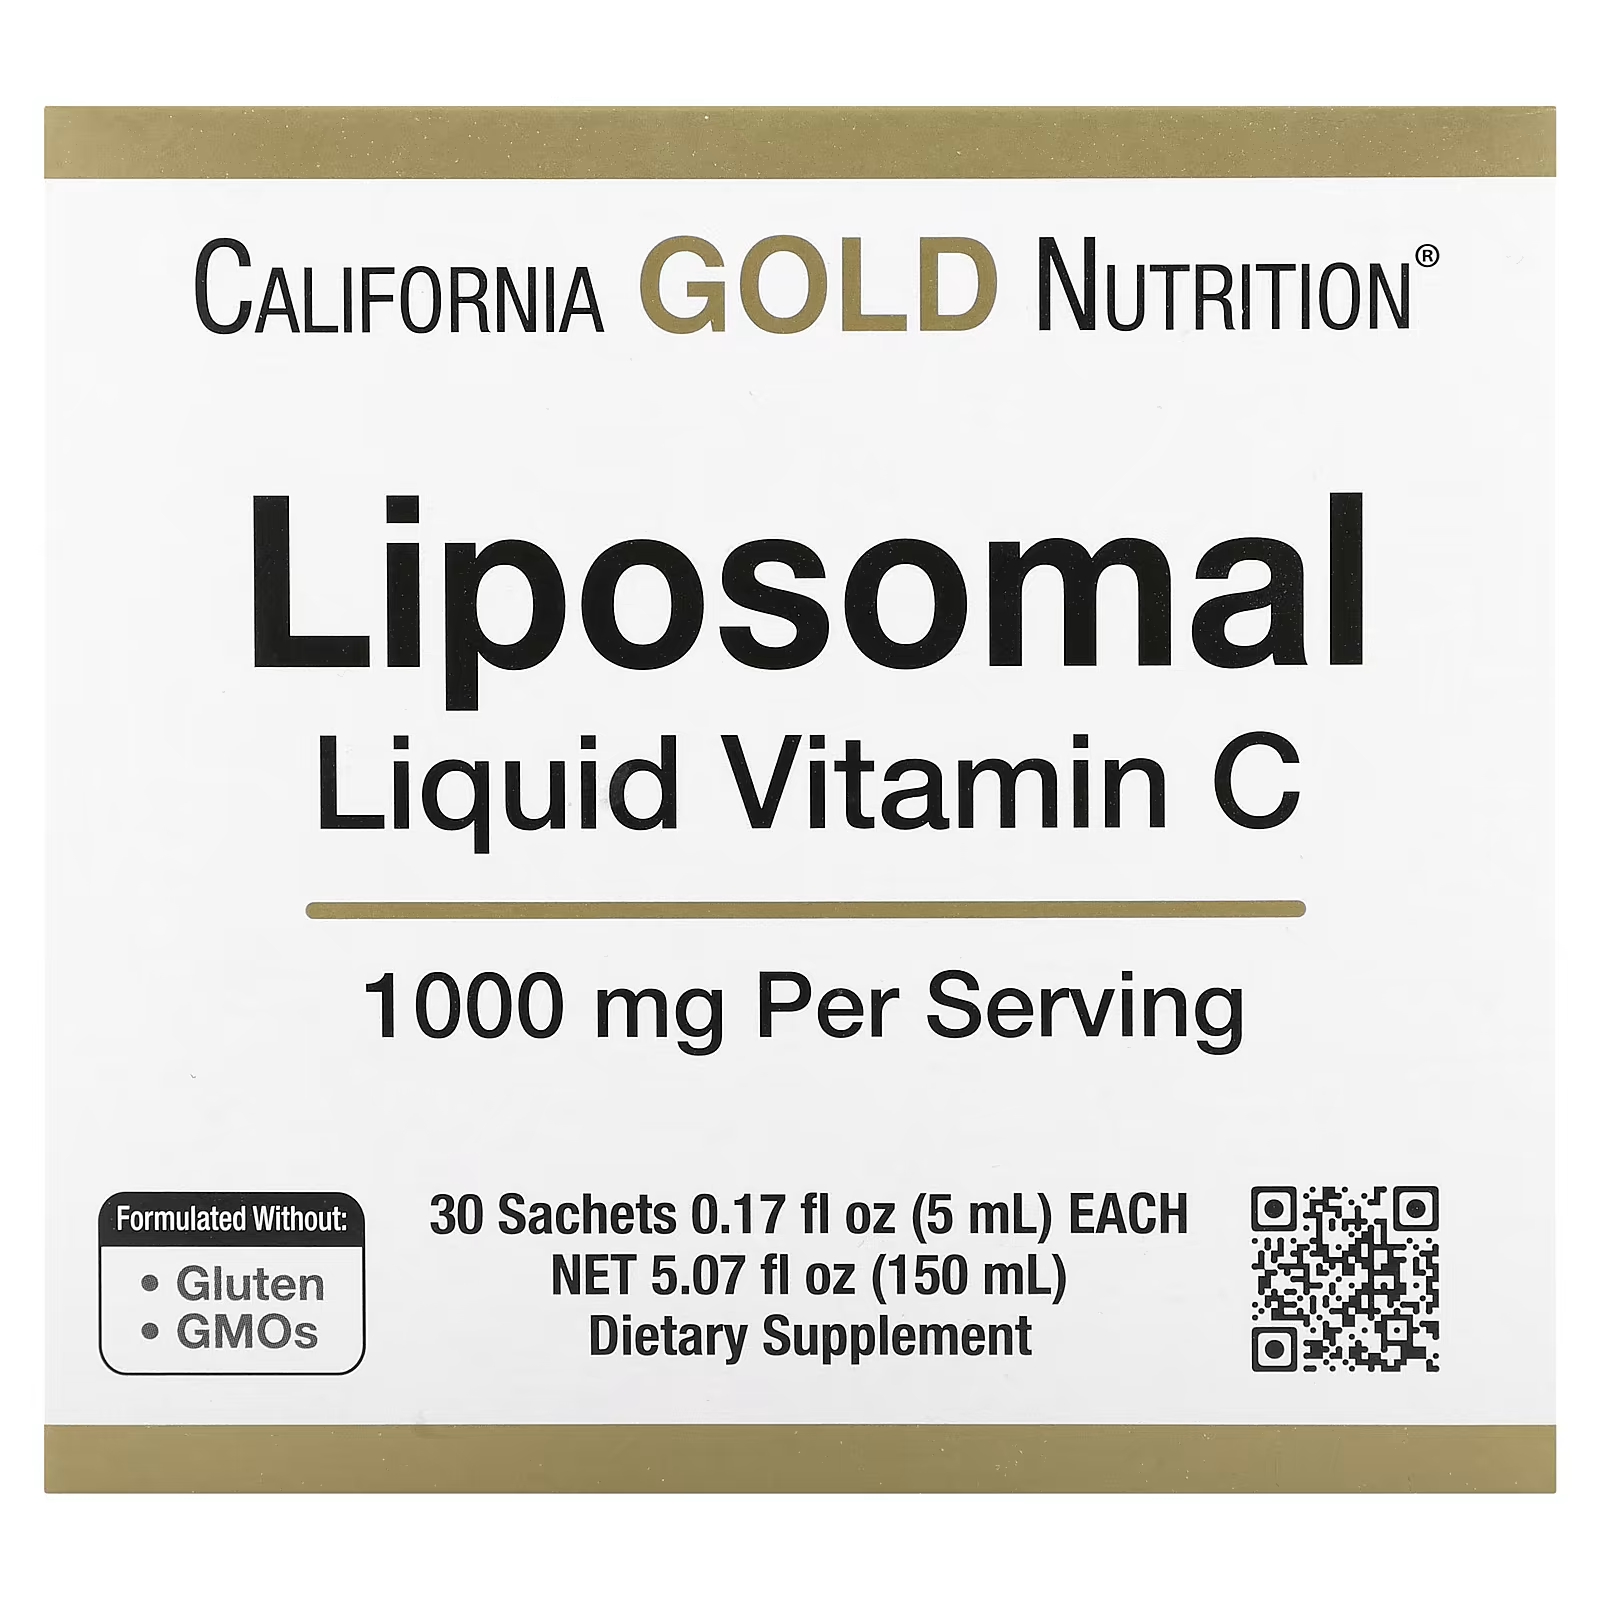 Липосомальный жидкий витамин С без вкуса, 1000 мг, 30 пакетиков California Gold Nutrition california gold nutrition липосомальный витамин b12 30 пакетиков по 5 мл 0 17 жидк унции